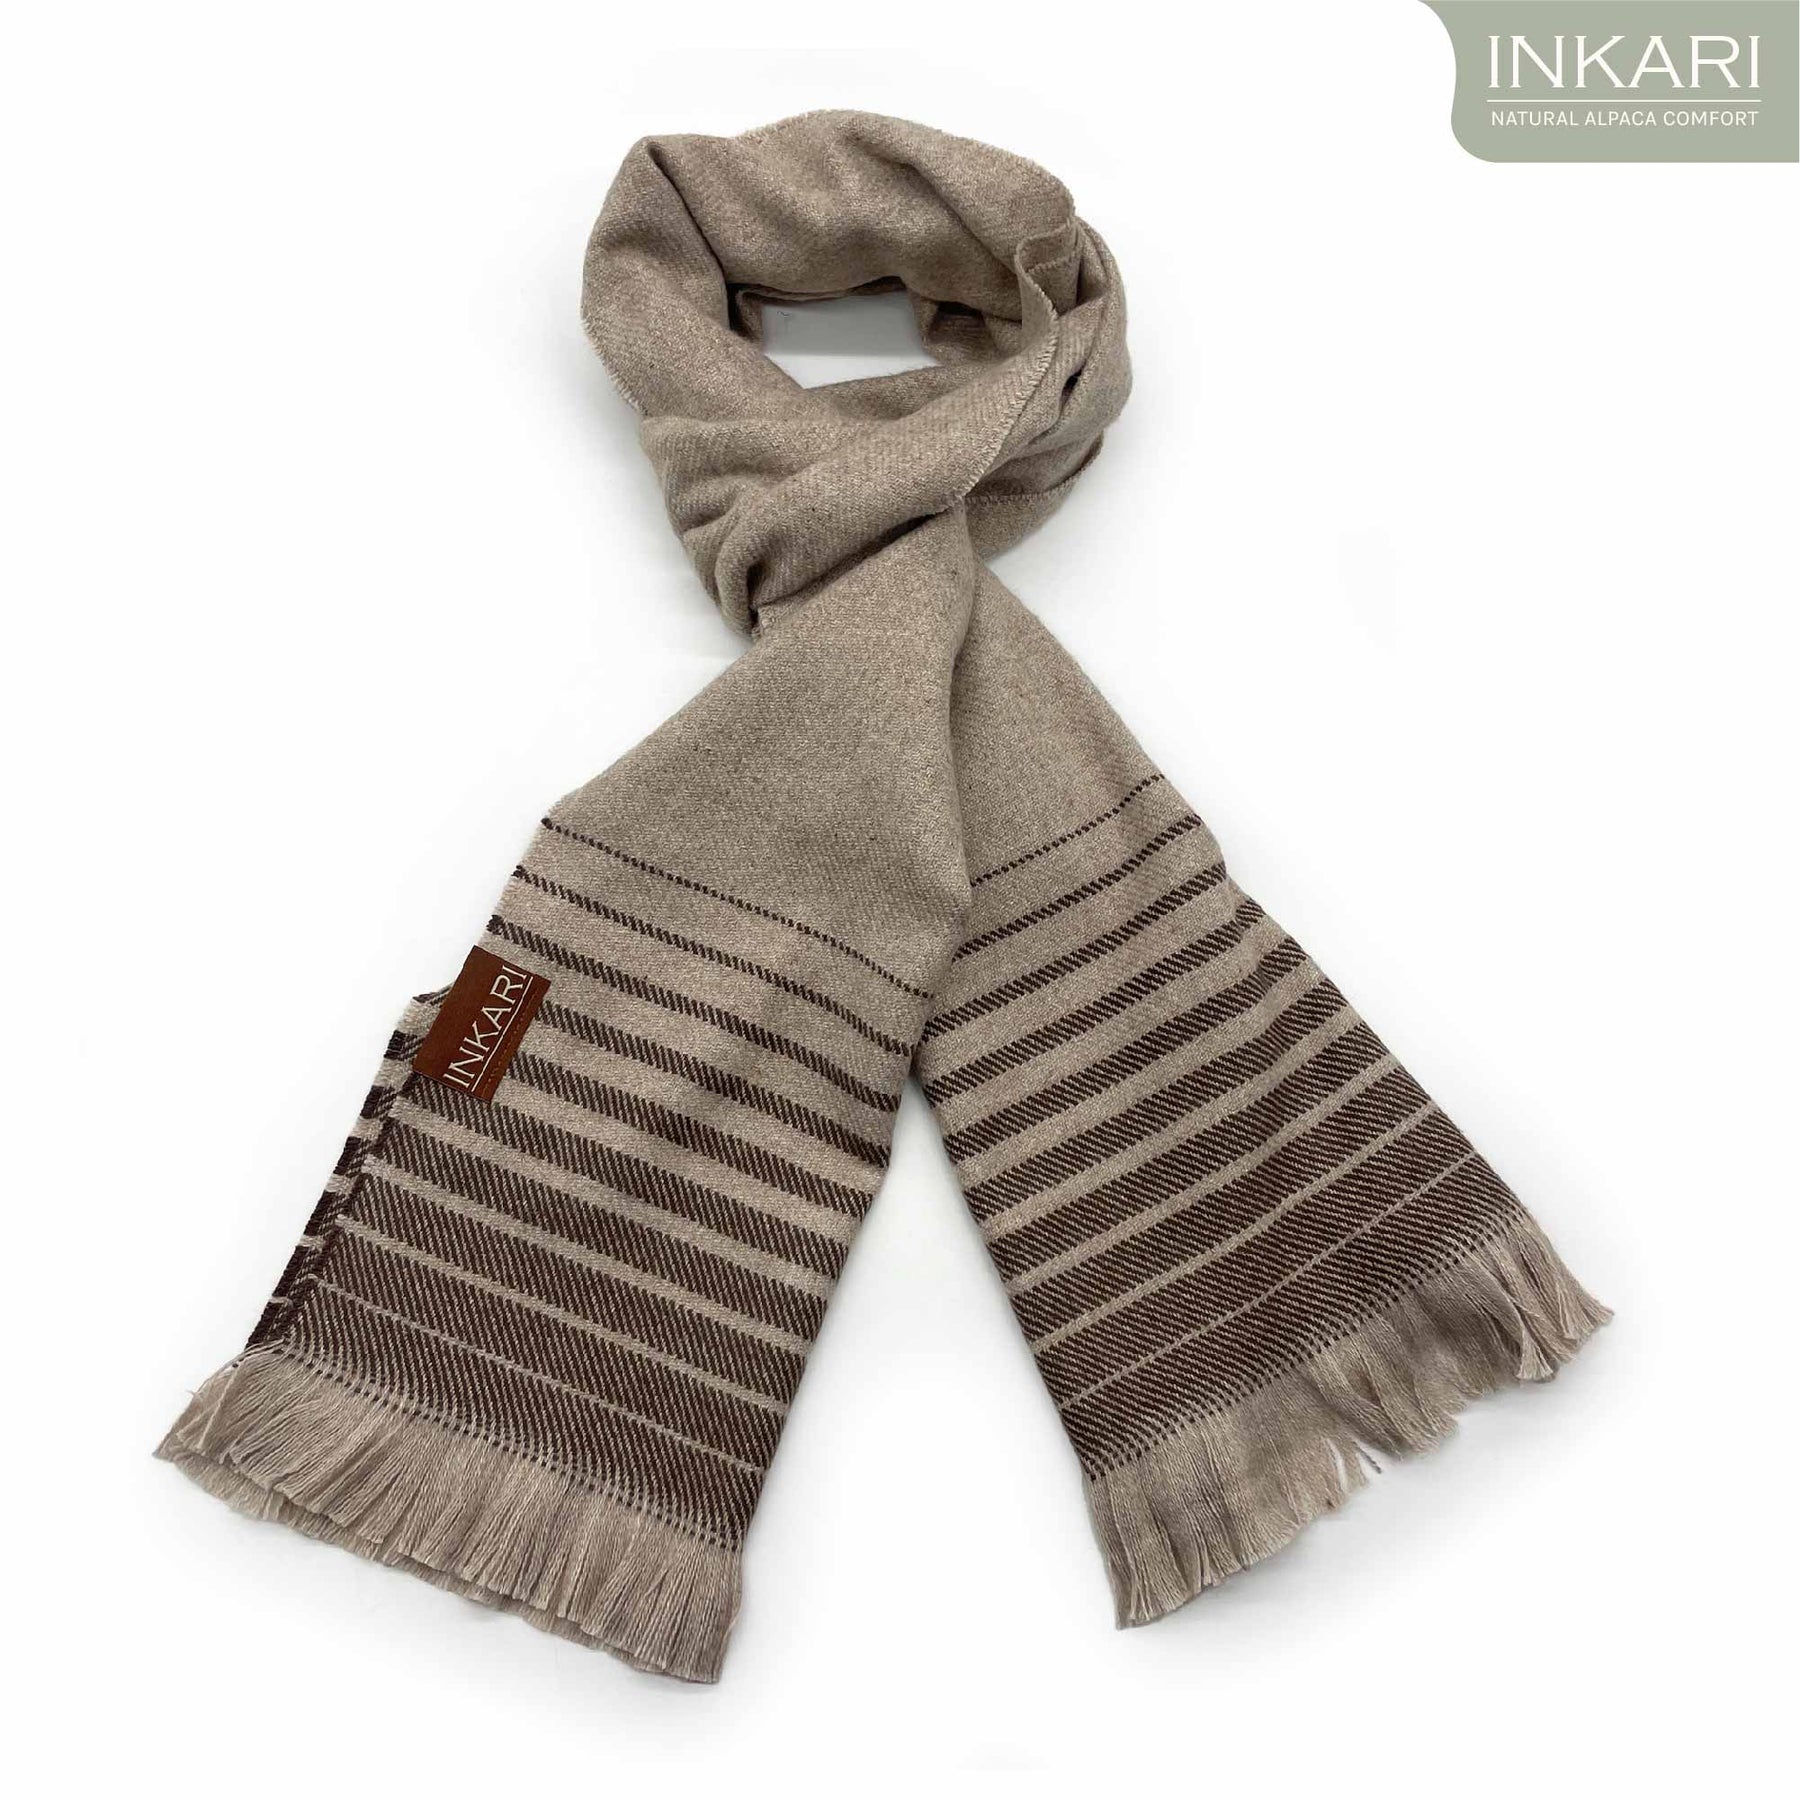 NEW Dark Brown 100% Alpaca wool scarf